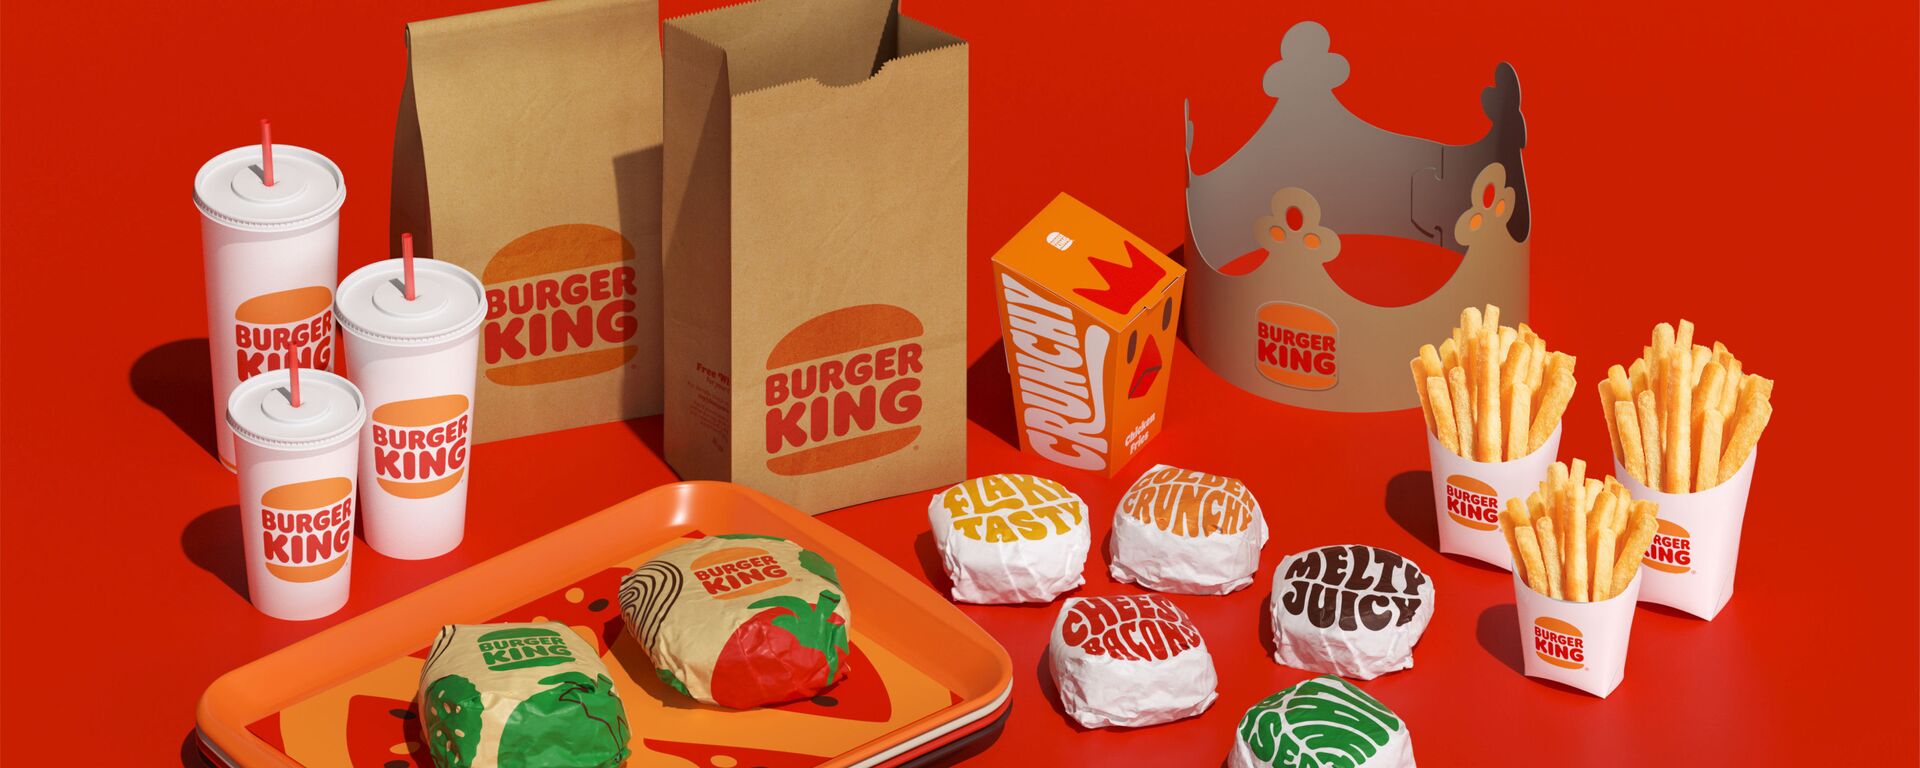 Burger King, 2021 yılında eski logosuna geri döndü. - Sputnik Türkiye, 1920, 18.03.2022